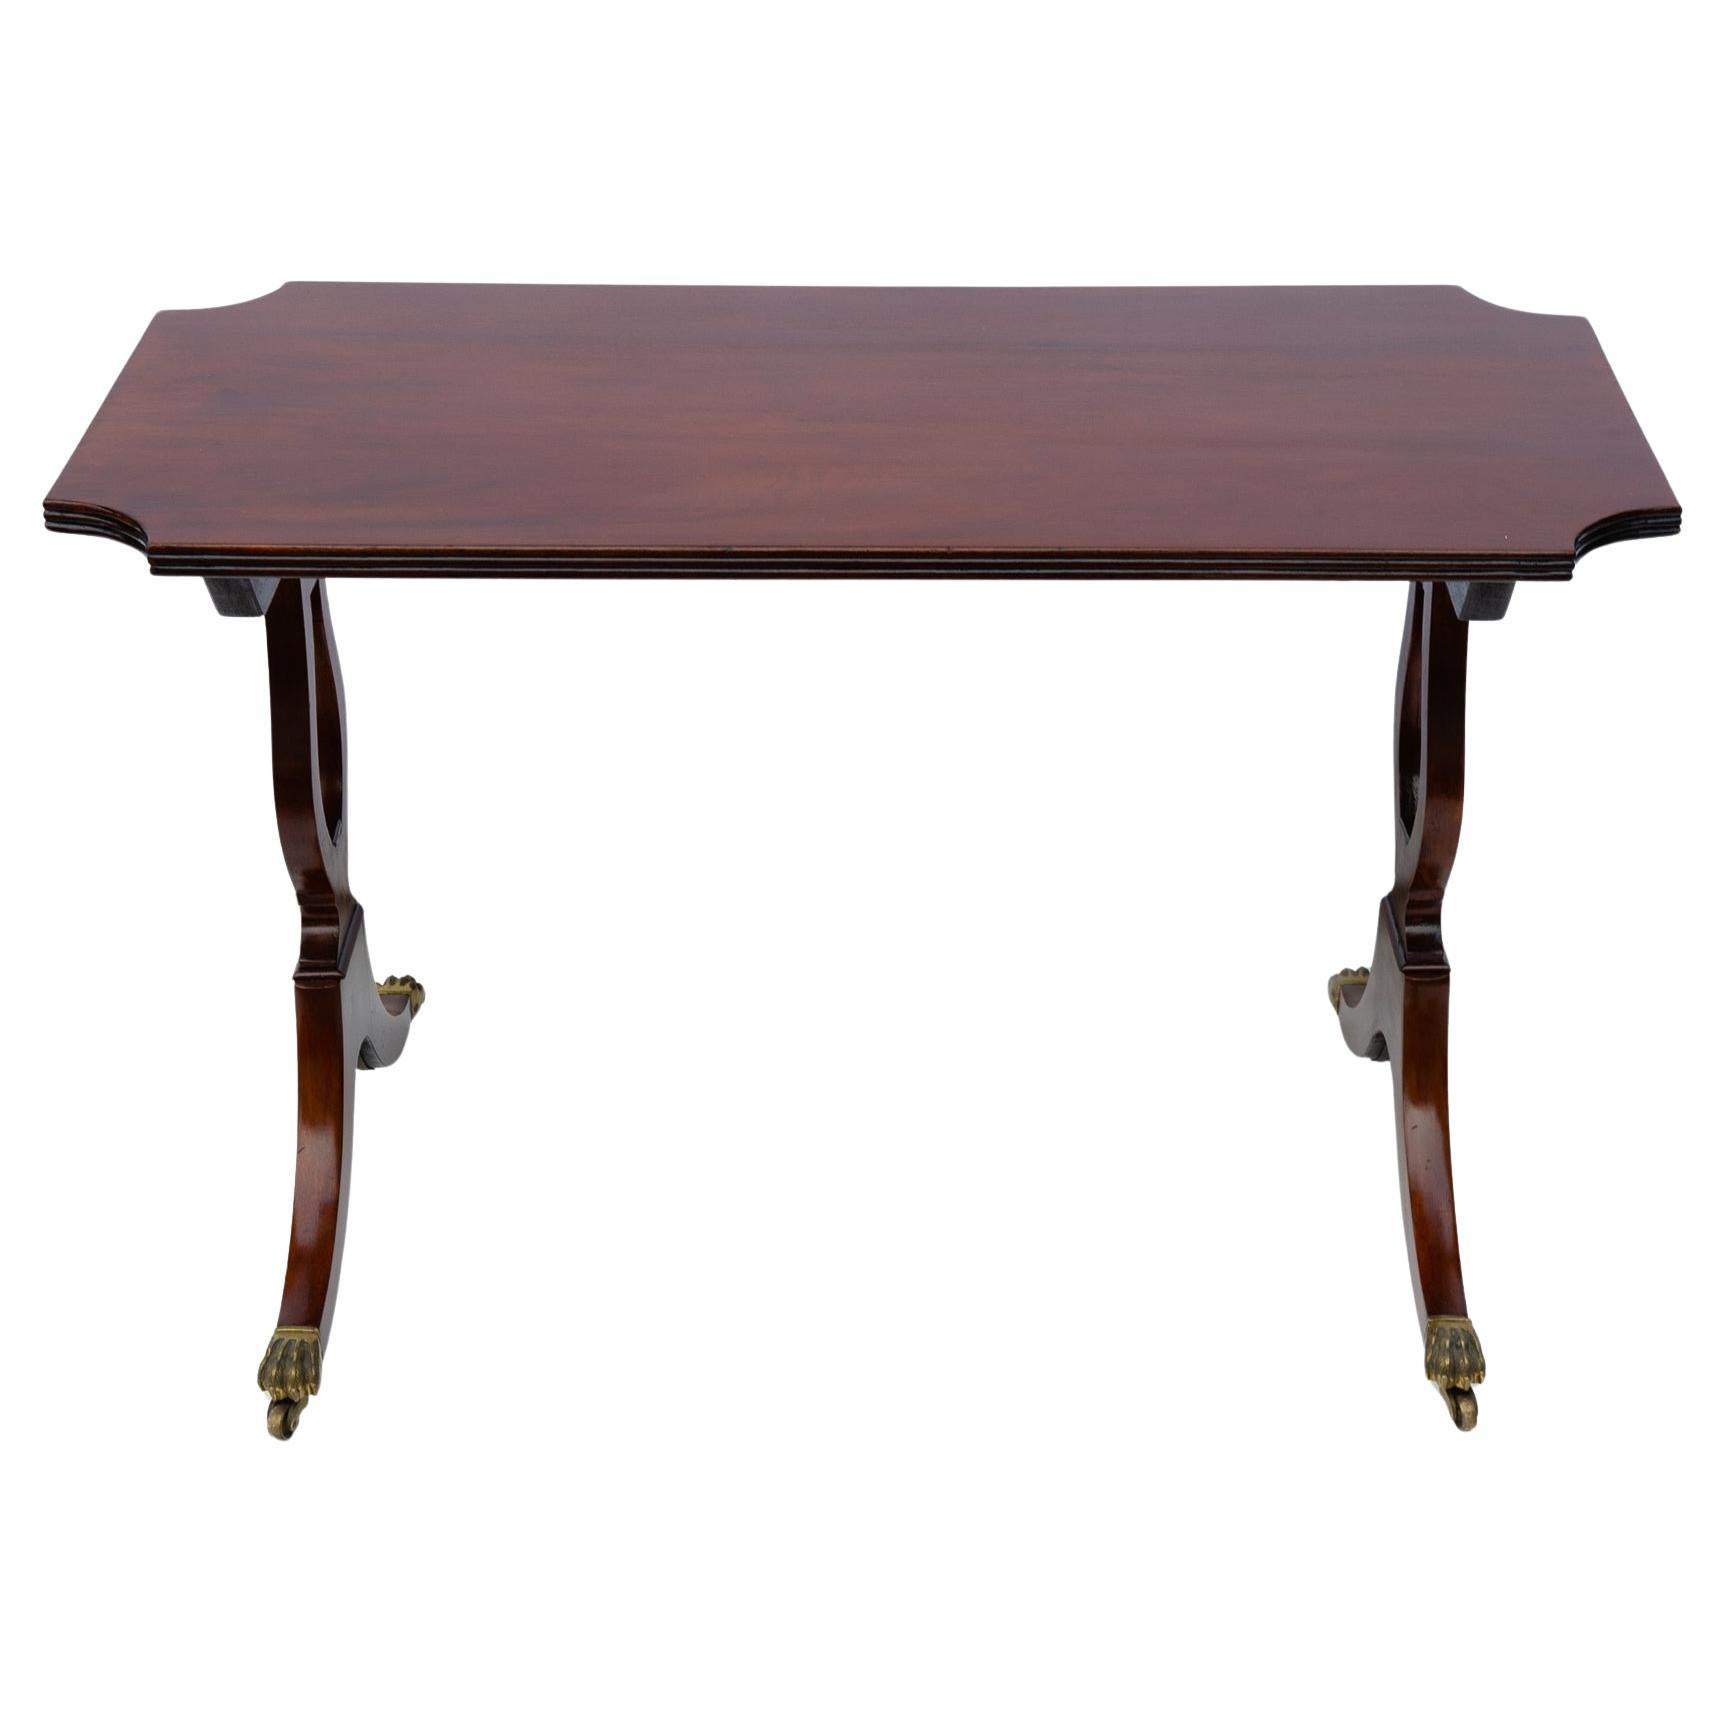 M/1107 -  Elégante table basse anglaise ancienne avec pieds en lyre et petites roues. Utile partout : dans le salon, le bureau, la chambre à coucher. Un prix intéressant est également proposé pour les activités de clôture.